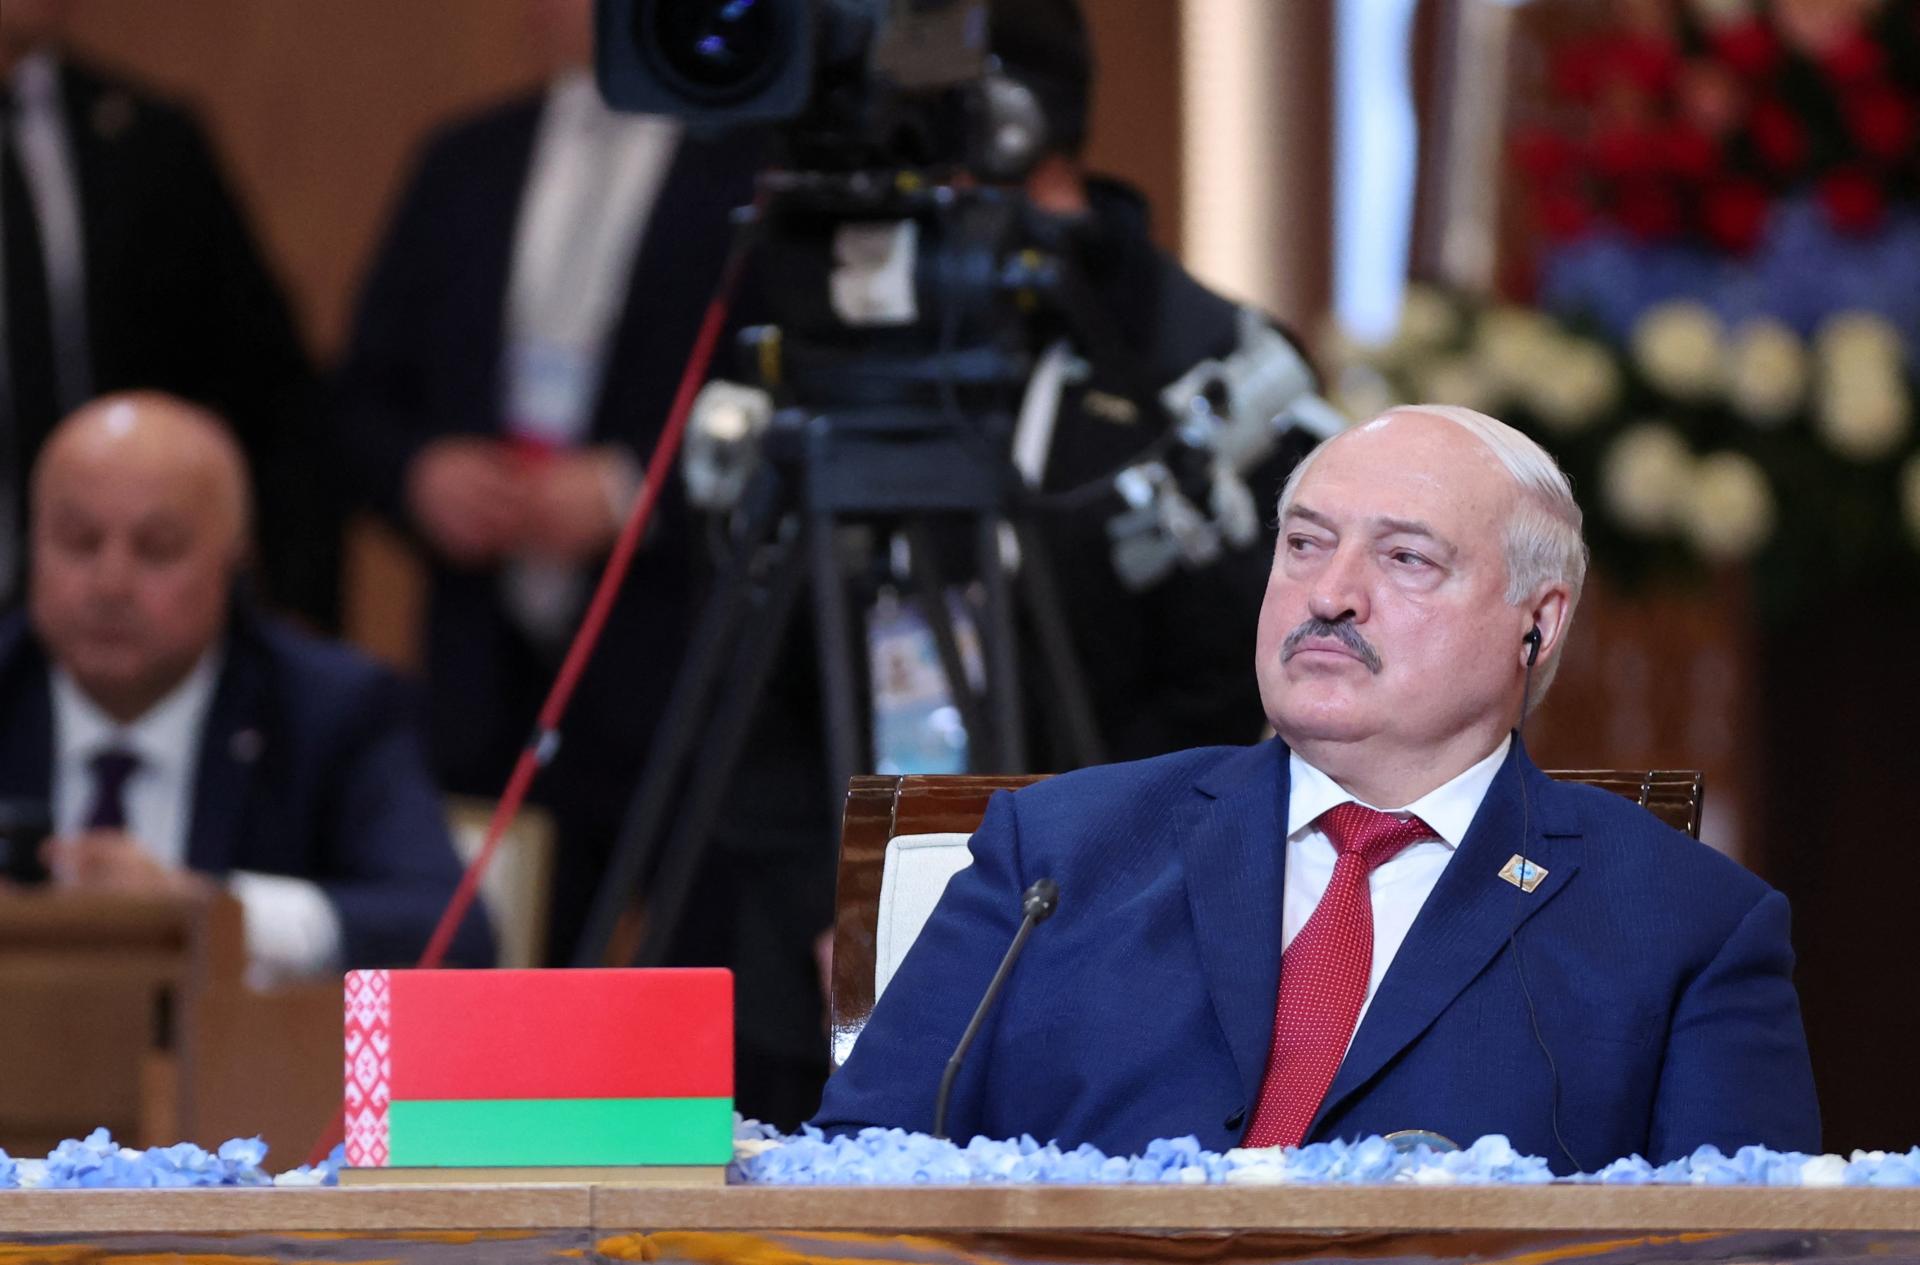 Bielorusko sa stalo členom Šanghajskej organizácie pre spoluprácu. Čína pokračuje v spolupráci s Ruskom